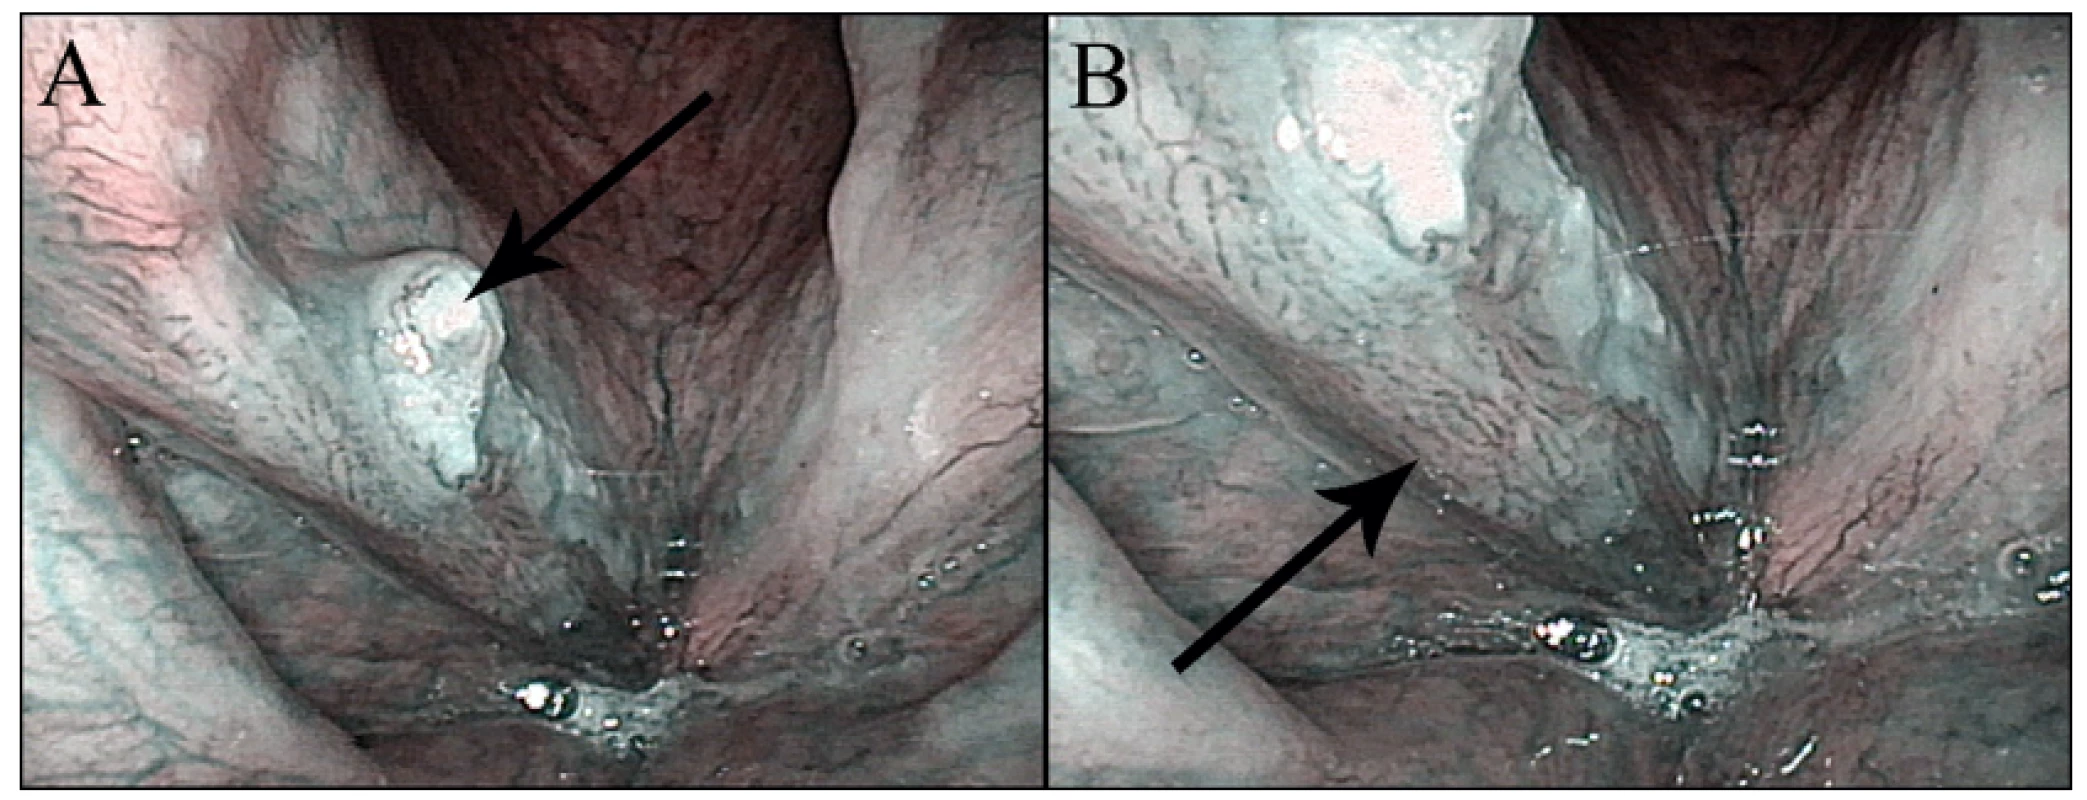 Obr. 2  Konvenční (nezvětšovací) NBI endoskopie – spinocelulární karcinom hlasivky: A – přehledný snímek s exofytickou částí tumoru (šipka), B – detail s patrnou patologickou vaskularizací v okrajích tumoru (šipka).